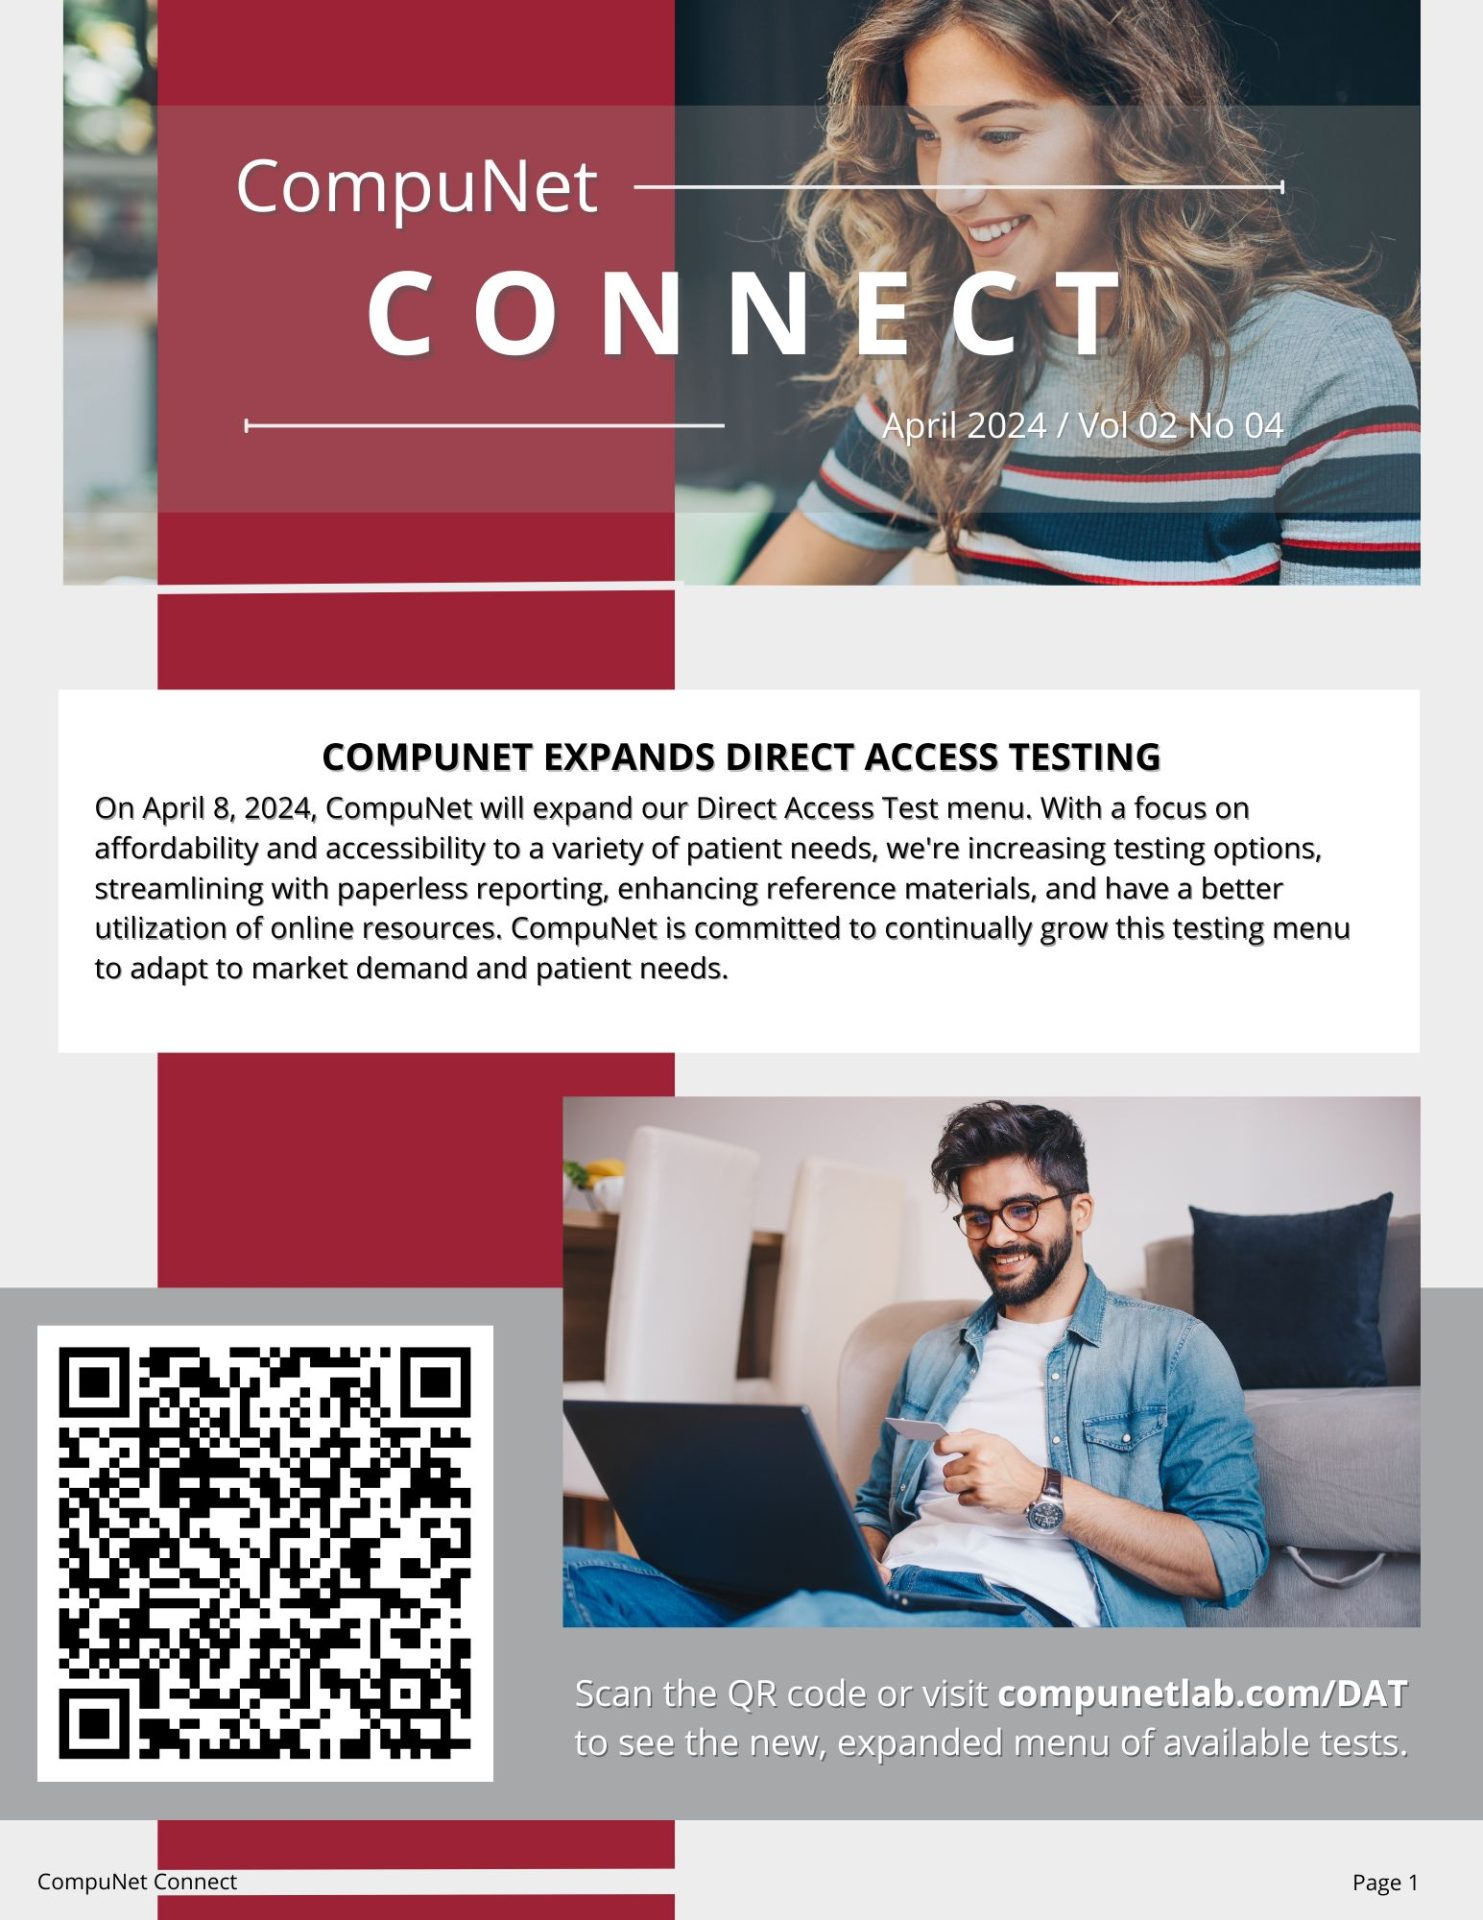 CompuNet Connect - April 2024